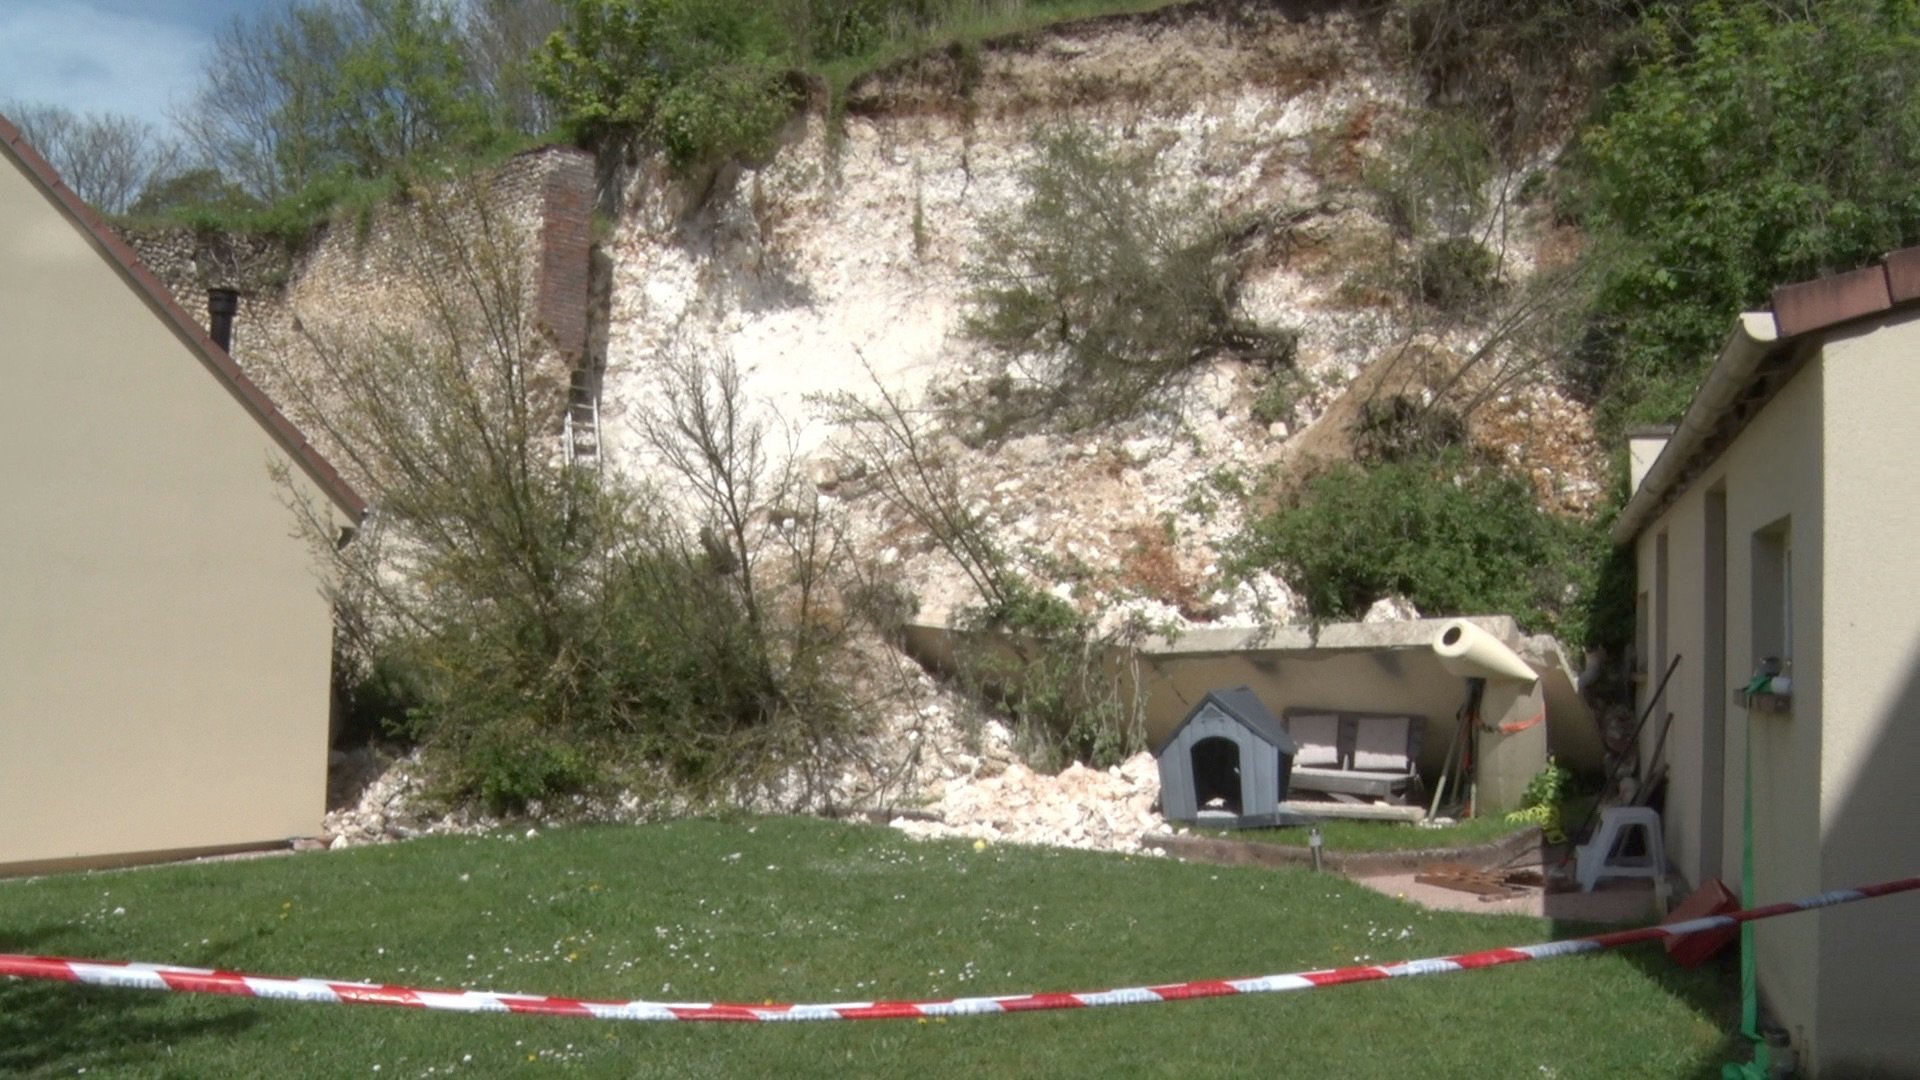 143 mètres de la falaise se sont effondrés dans le jardin de Mélanie et Christopher à Gasville-Oisème. LP/Emmanuel Senecharles